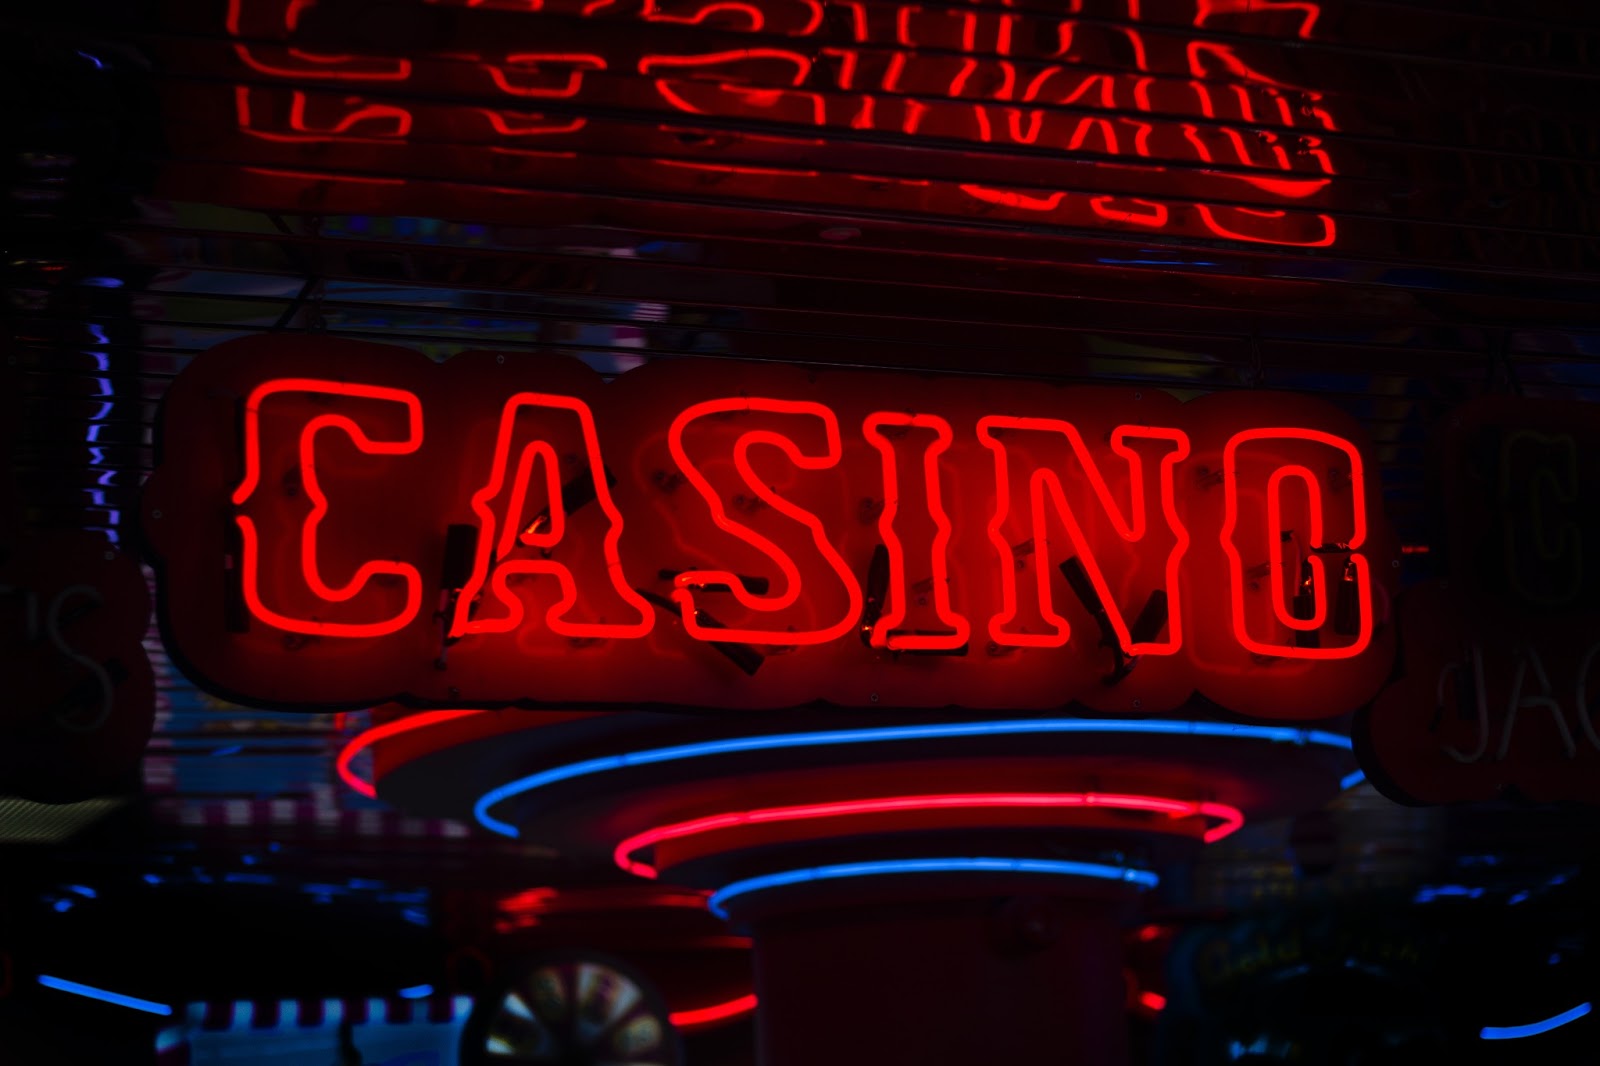 Casino sign to symbolize eCheck casinos disadvantages